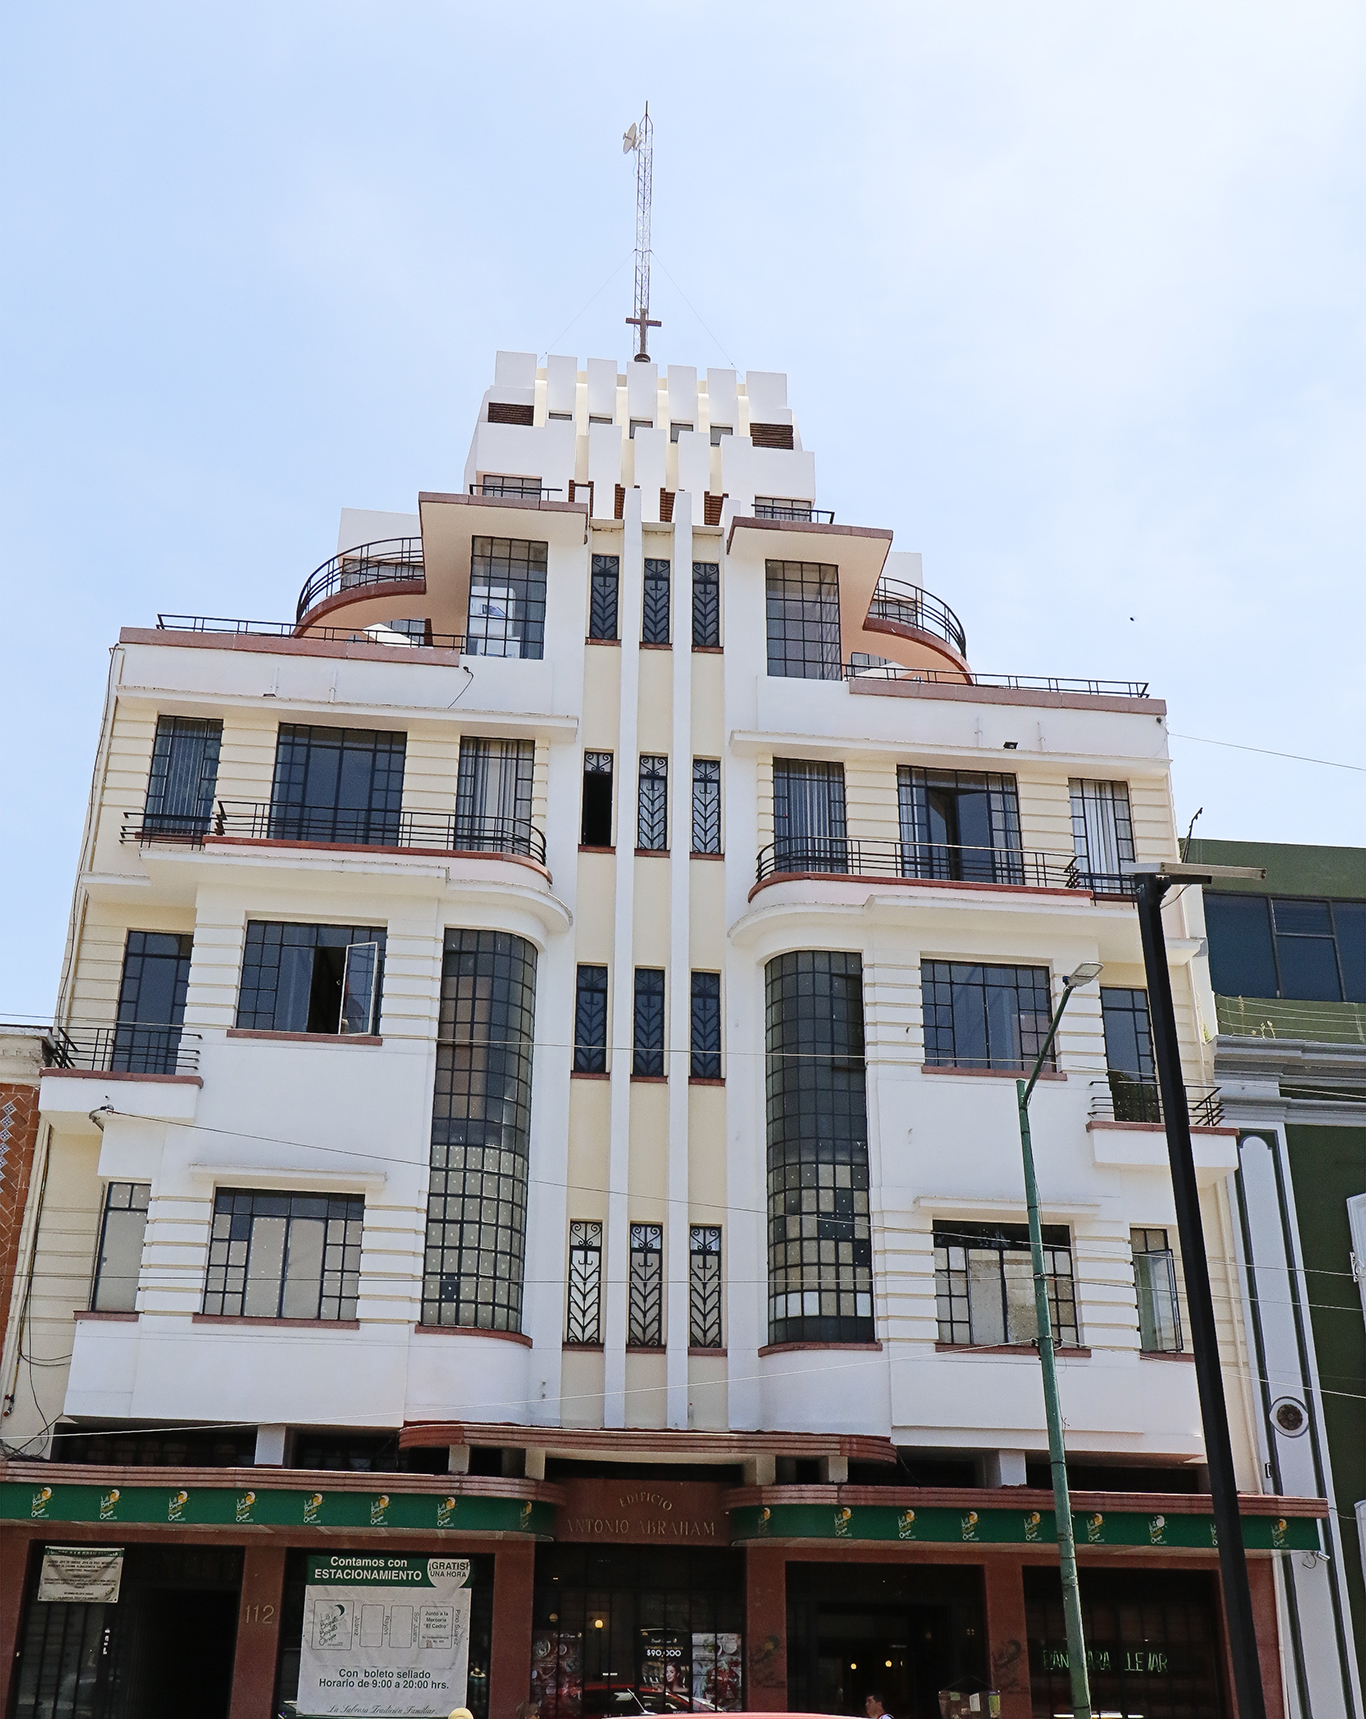 Edificio Antonio Abraham “La Violeta” simbolo de la modernidad en Toluca